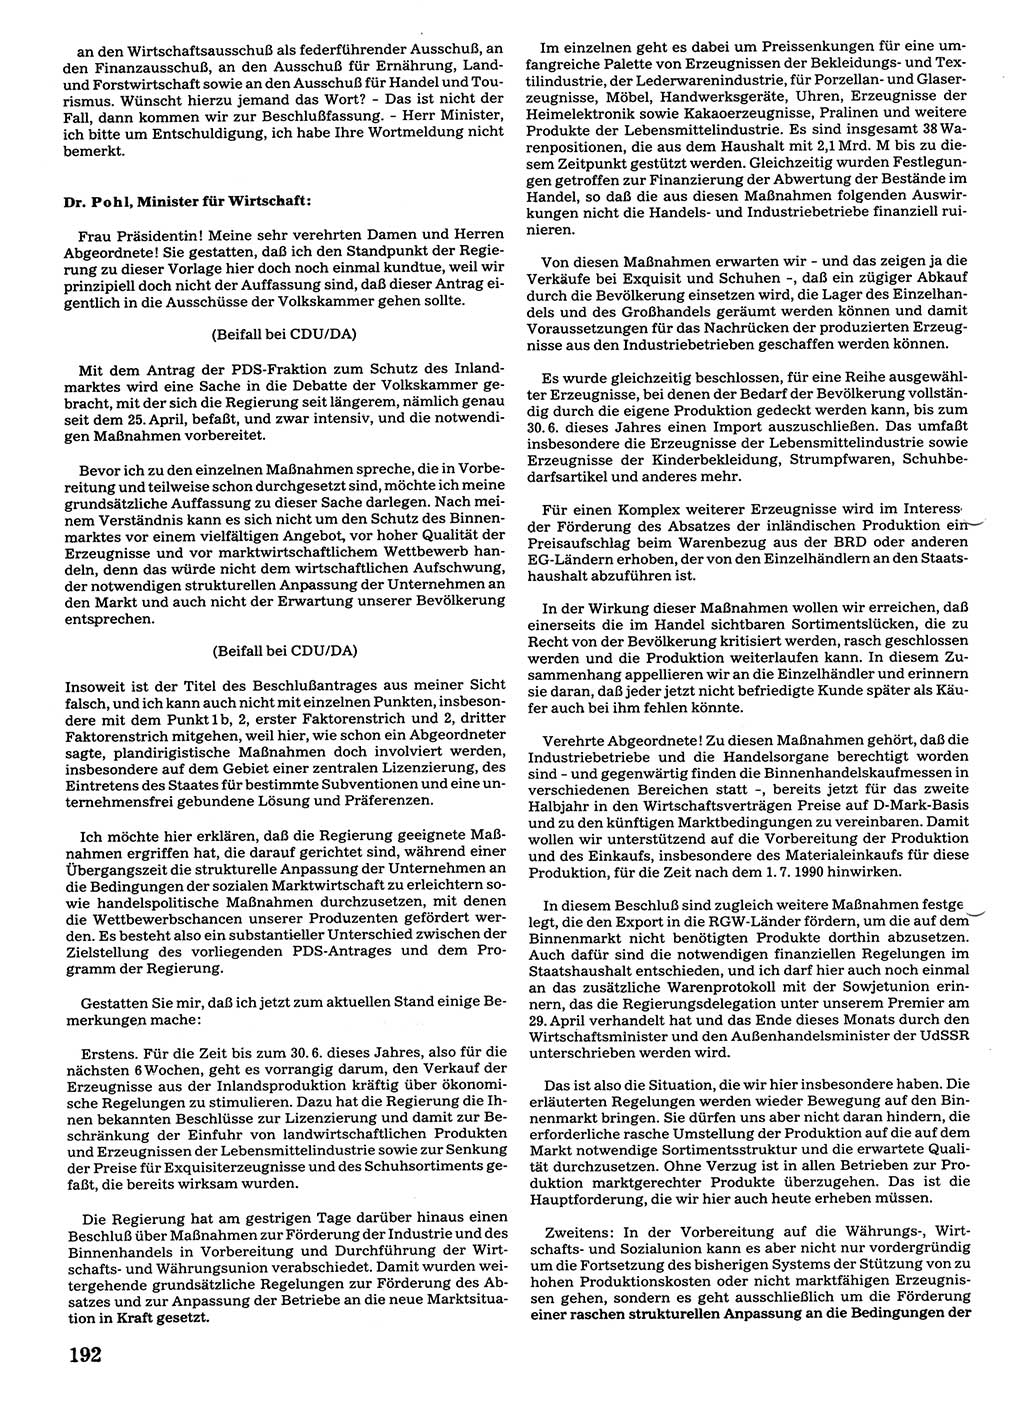 Tagungen der Volkskammer (VK) der Deutschen Demokratischen Republik (DDR), 10. Wahlperiode 1990, Seite 192 (VK. DDR 10. WP. 1990, Prot. Tg. 1-38, 5.4.-2.10.1990, S. 192)